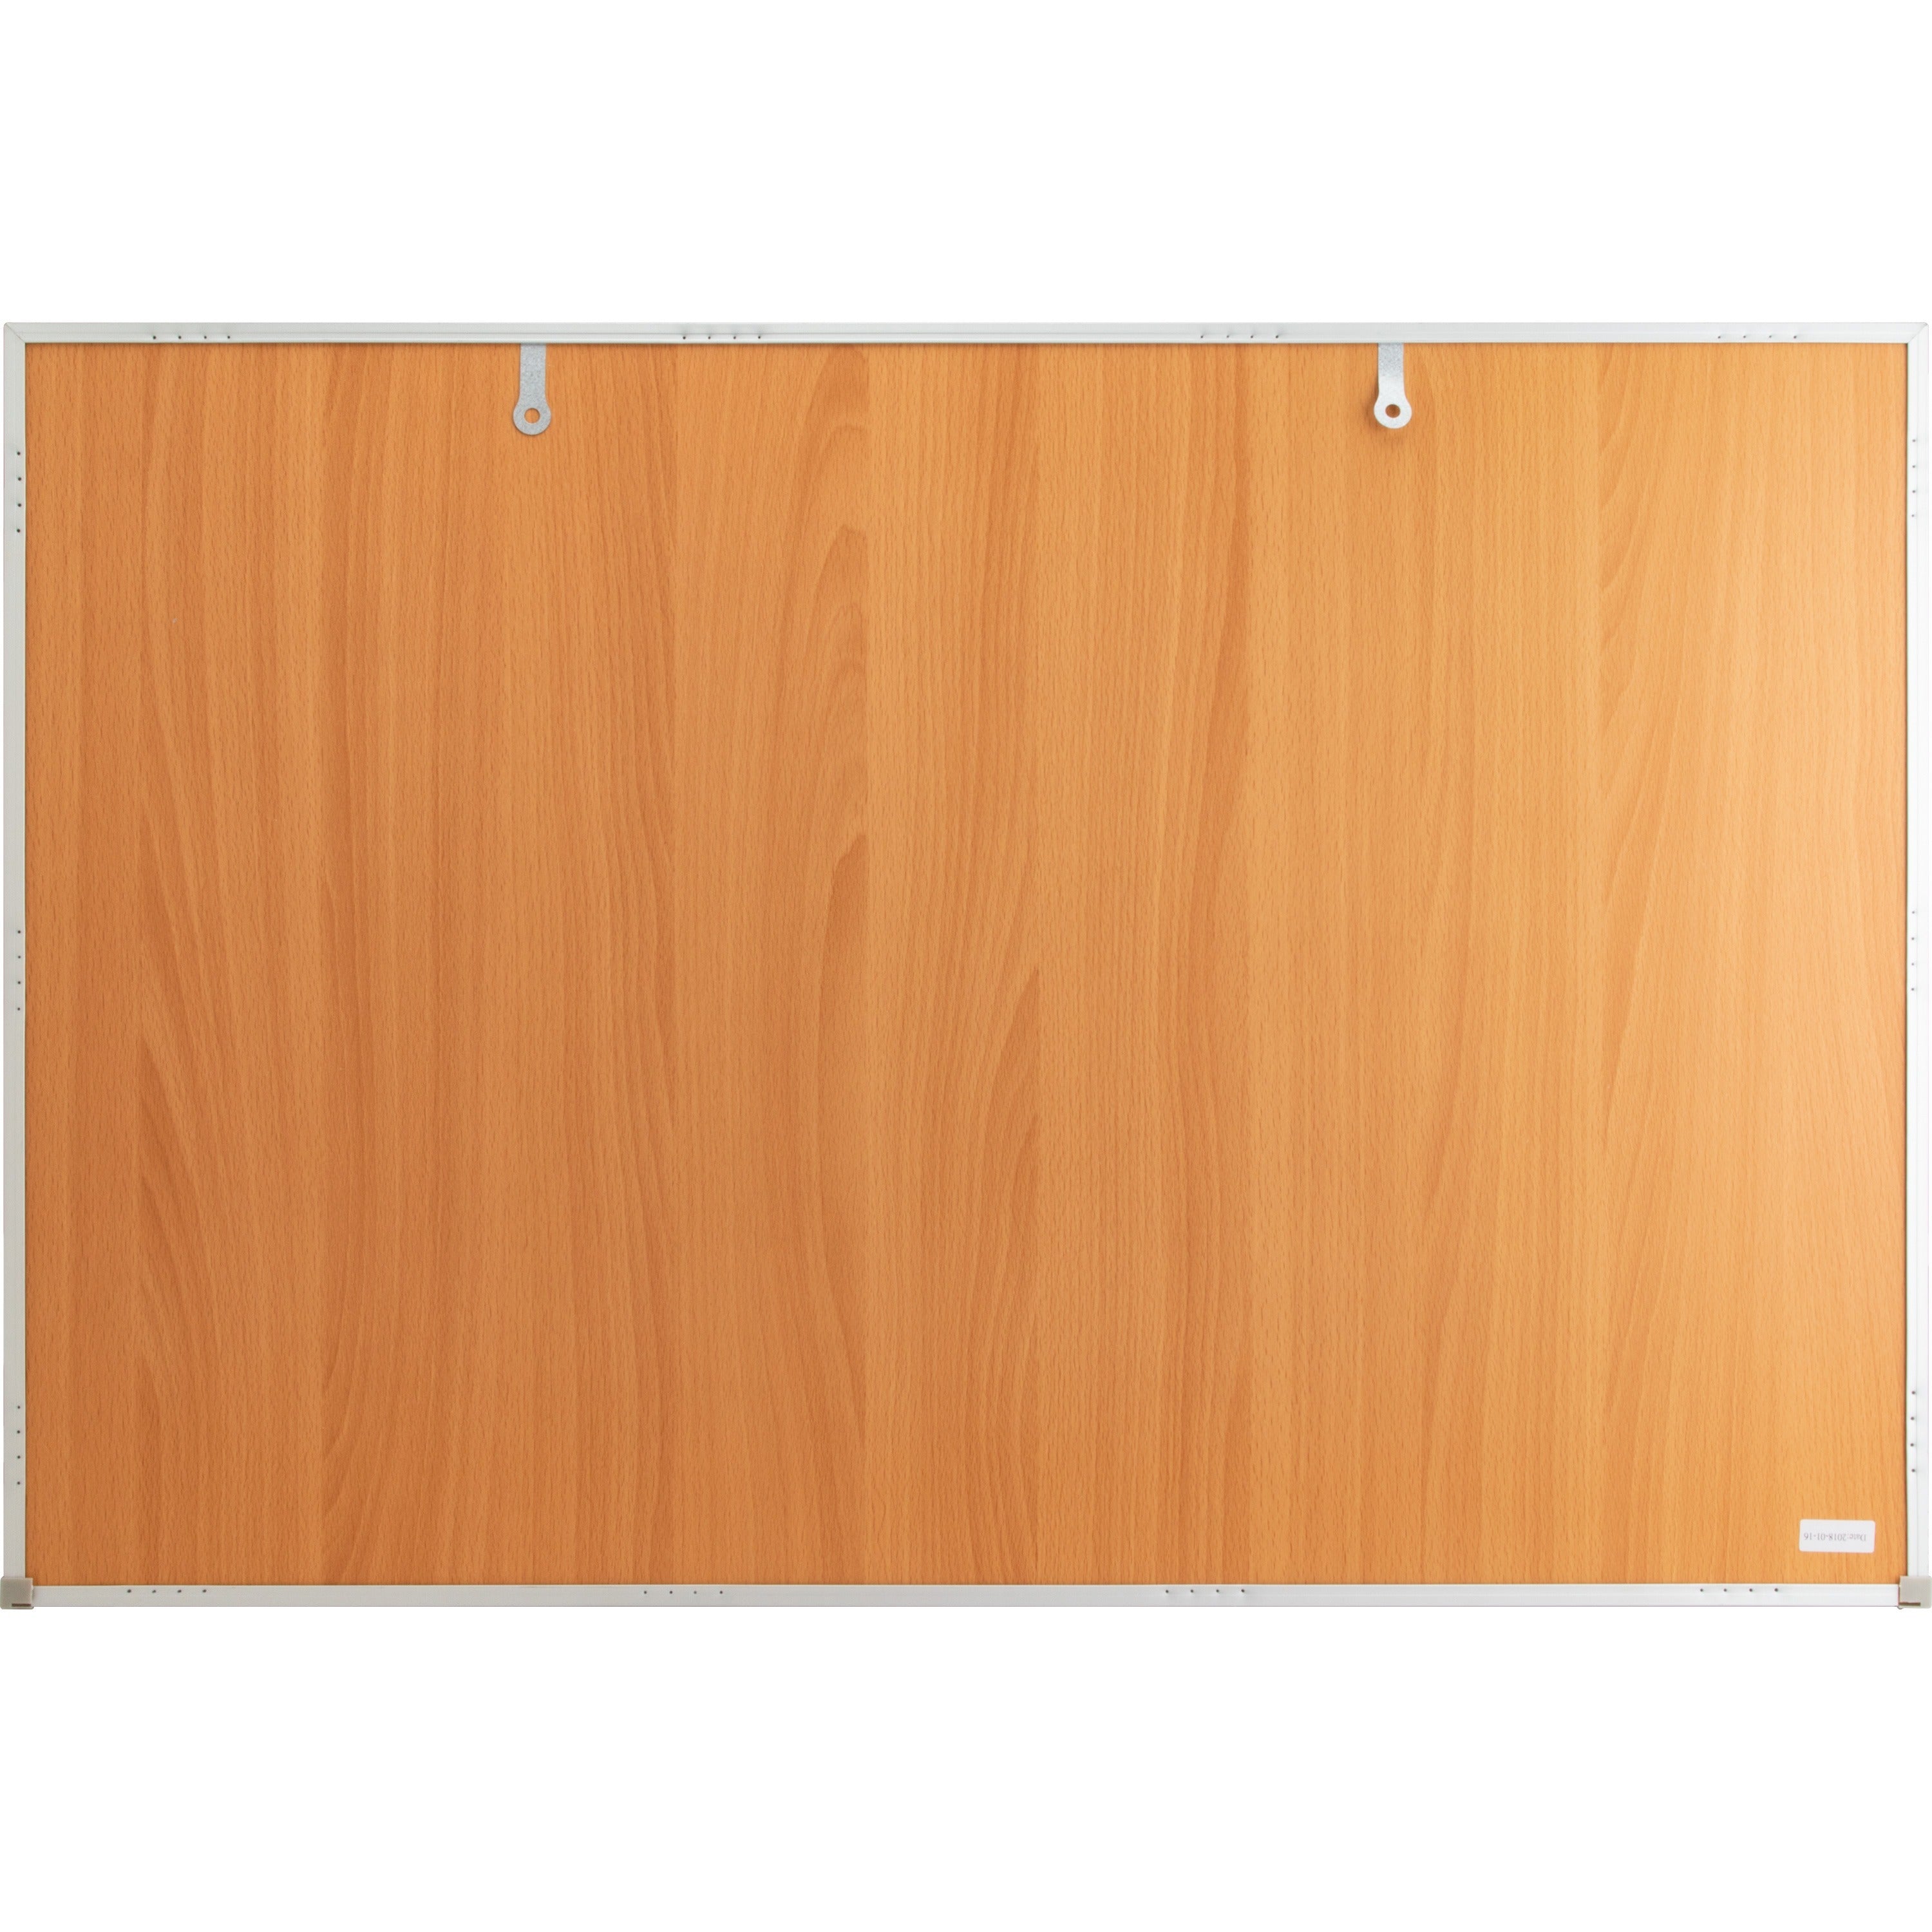 lorell-economy-dry-erase-board-36-3-ft-width-x-24-2-ft-height-white-melamine-surface-white-aluminum-frame-rectangle-1-each_llr19770 - 2